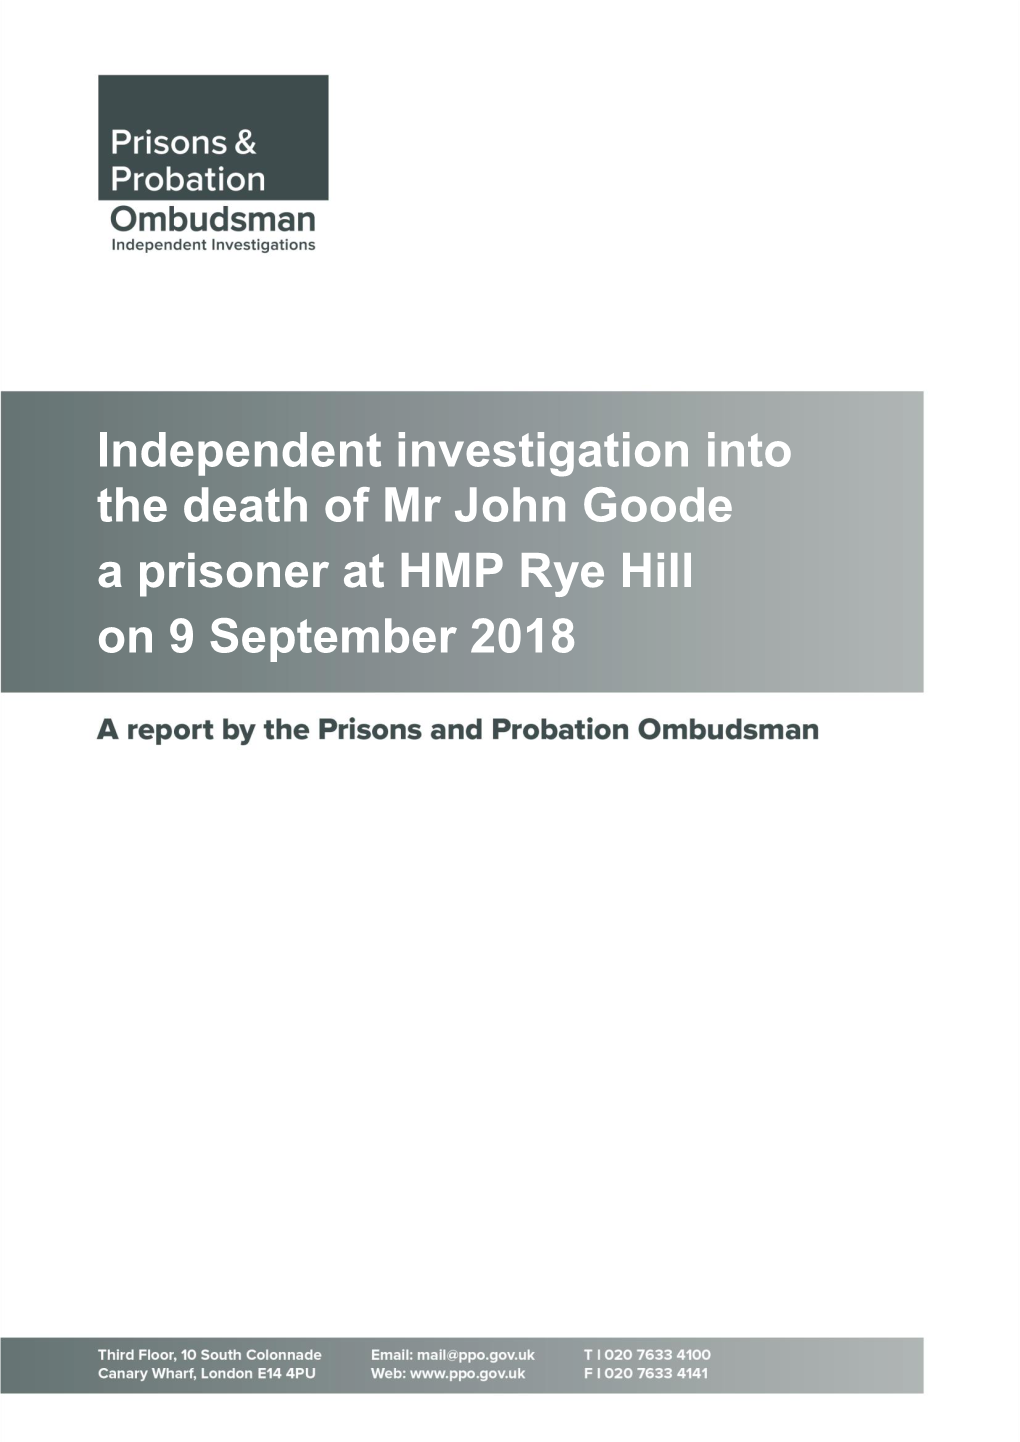 Independent Investigation Into the Death of Mr John Goode a Prisoner at HMP Rye Hill on 9 September 2018